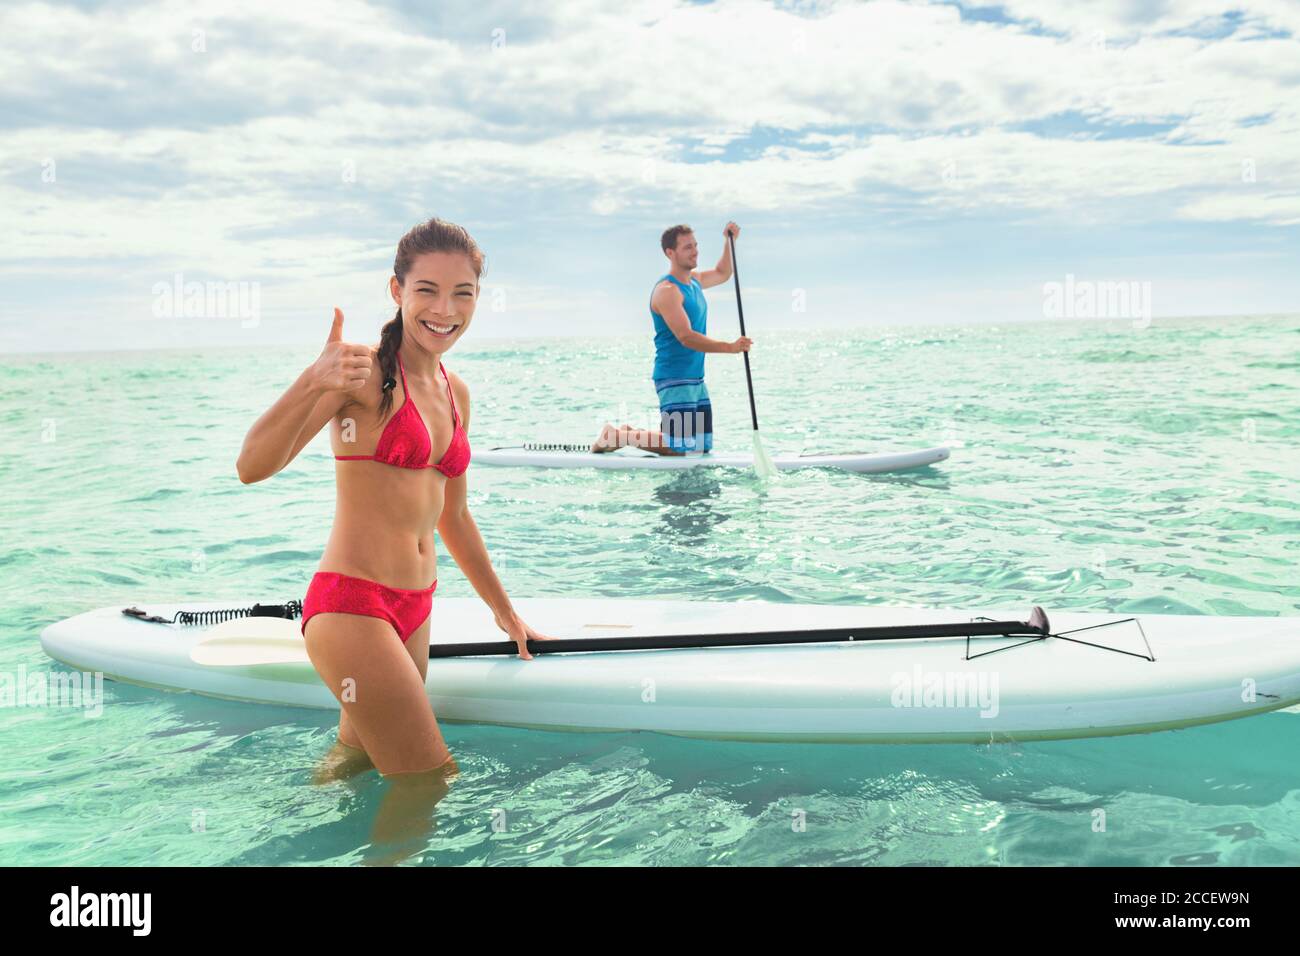 Playa de paddleboard gente en tablas de paddle surf en el océano en la playa de Hawaii. Raza mixta pareja mujer y el hombre caucásico disfrutando de deportes acuáticos Foto de stock